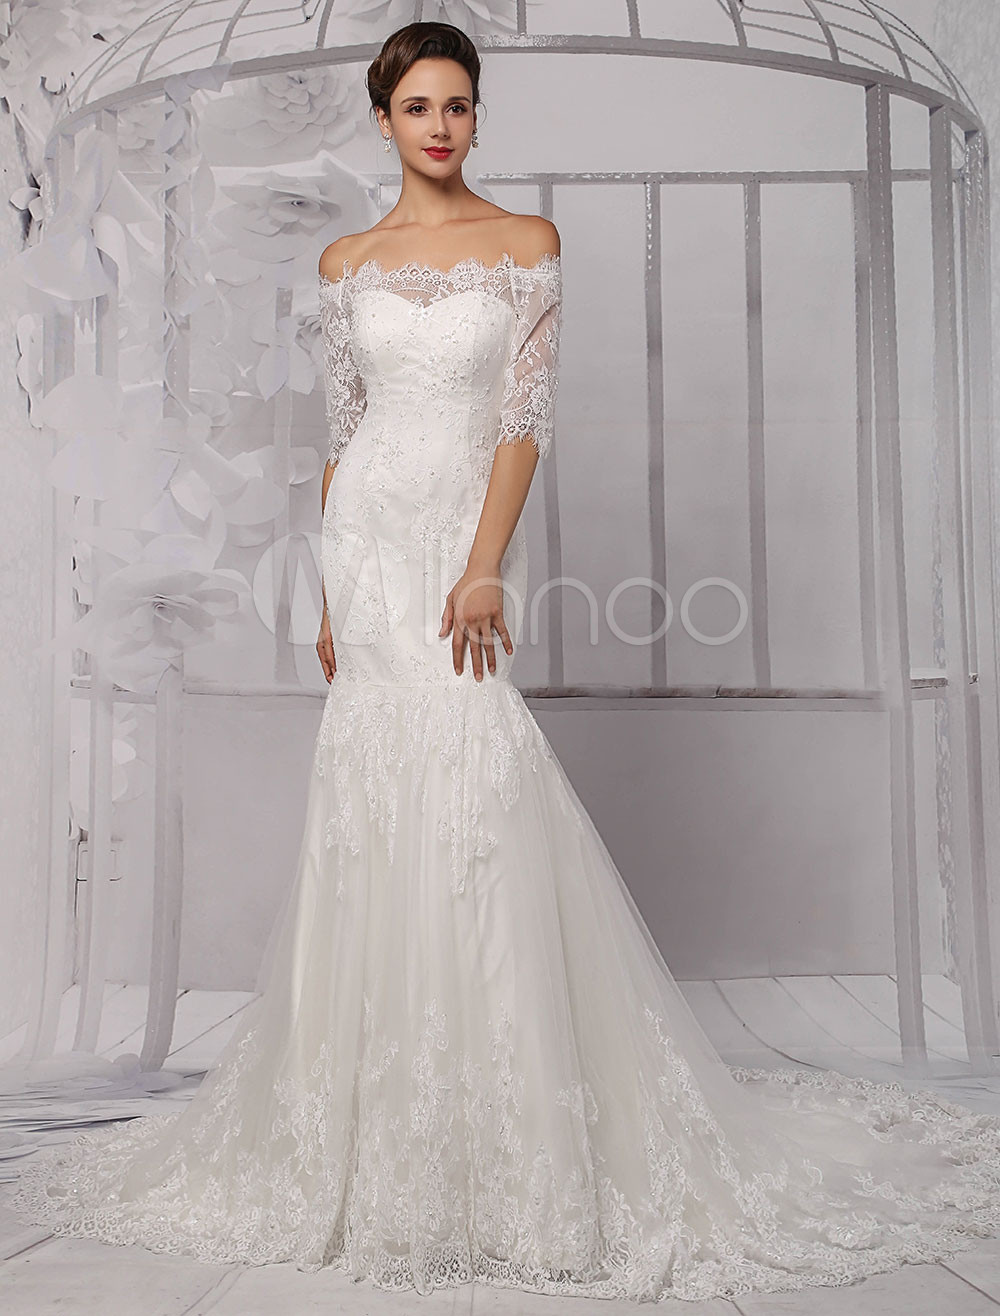 Off The Shoulder Lace Wedding Dress
 Half Sleeve f the Shoulder Lace Wedding Dress in Trumpet